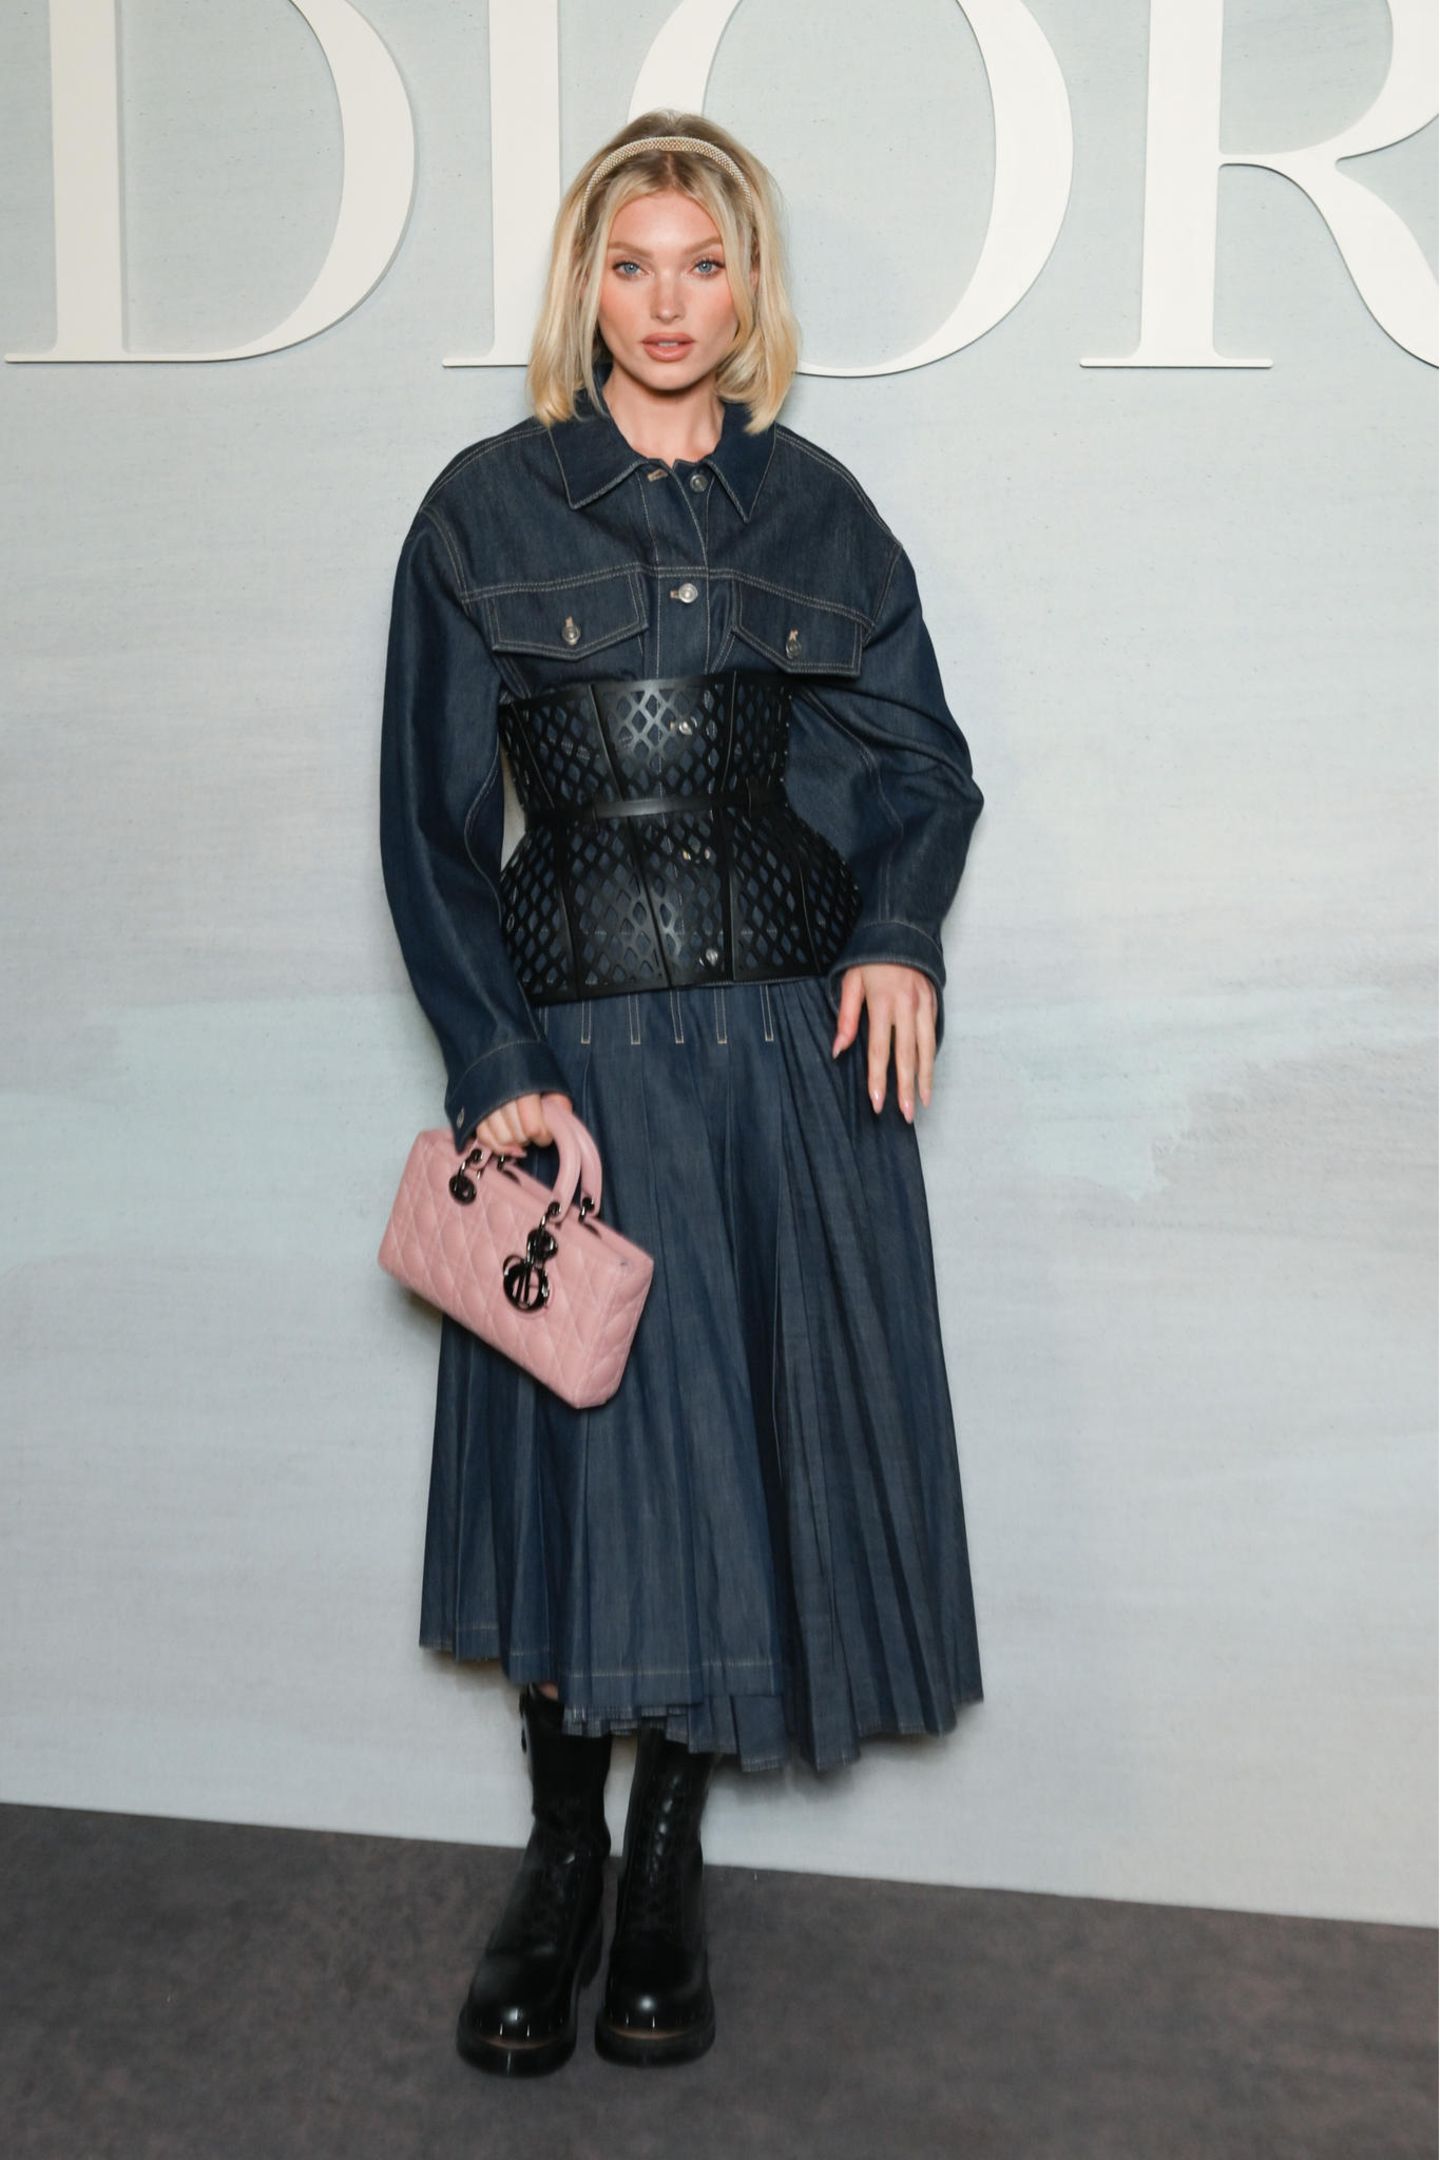 Elsa Hosk lässt sich die Modenschau von Dior nicht entgehen. Für das Event greift sie zum langen Jeanskleid mit Korsage und derben Boots. Zum Blickfang des Outfits wird die babyrosa Tasche. 